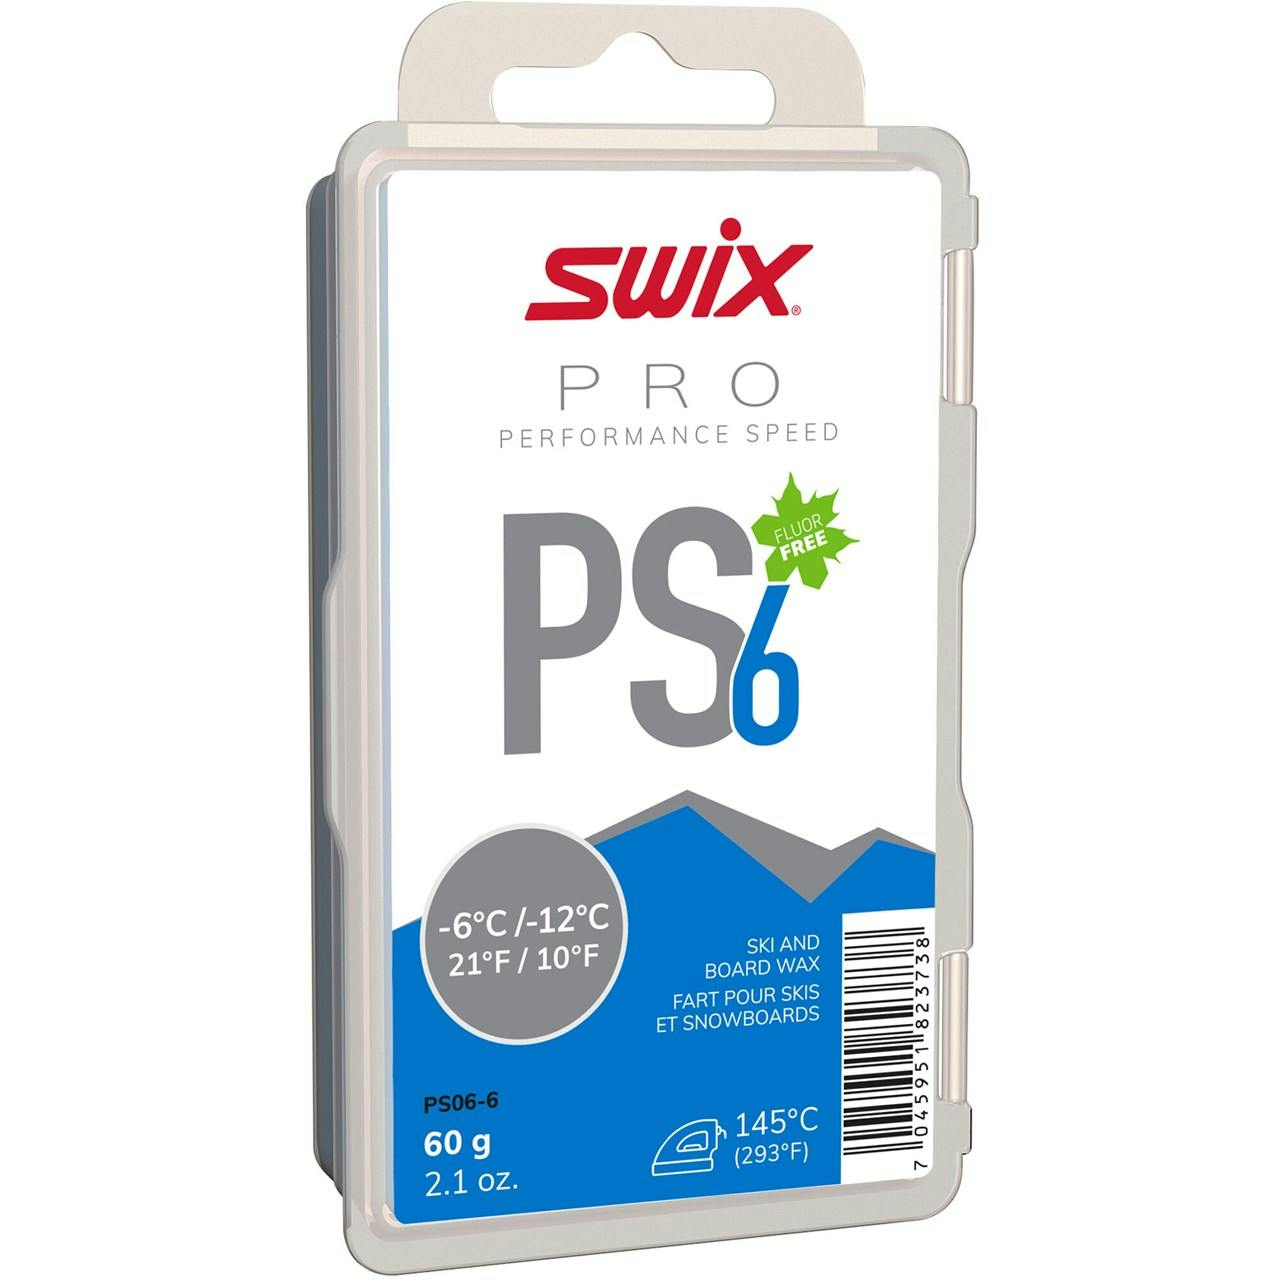 Swix PS6 Blue, -6°C/-12°C, 60g